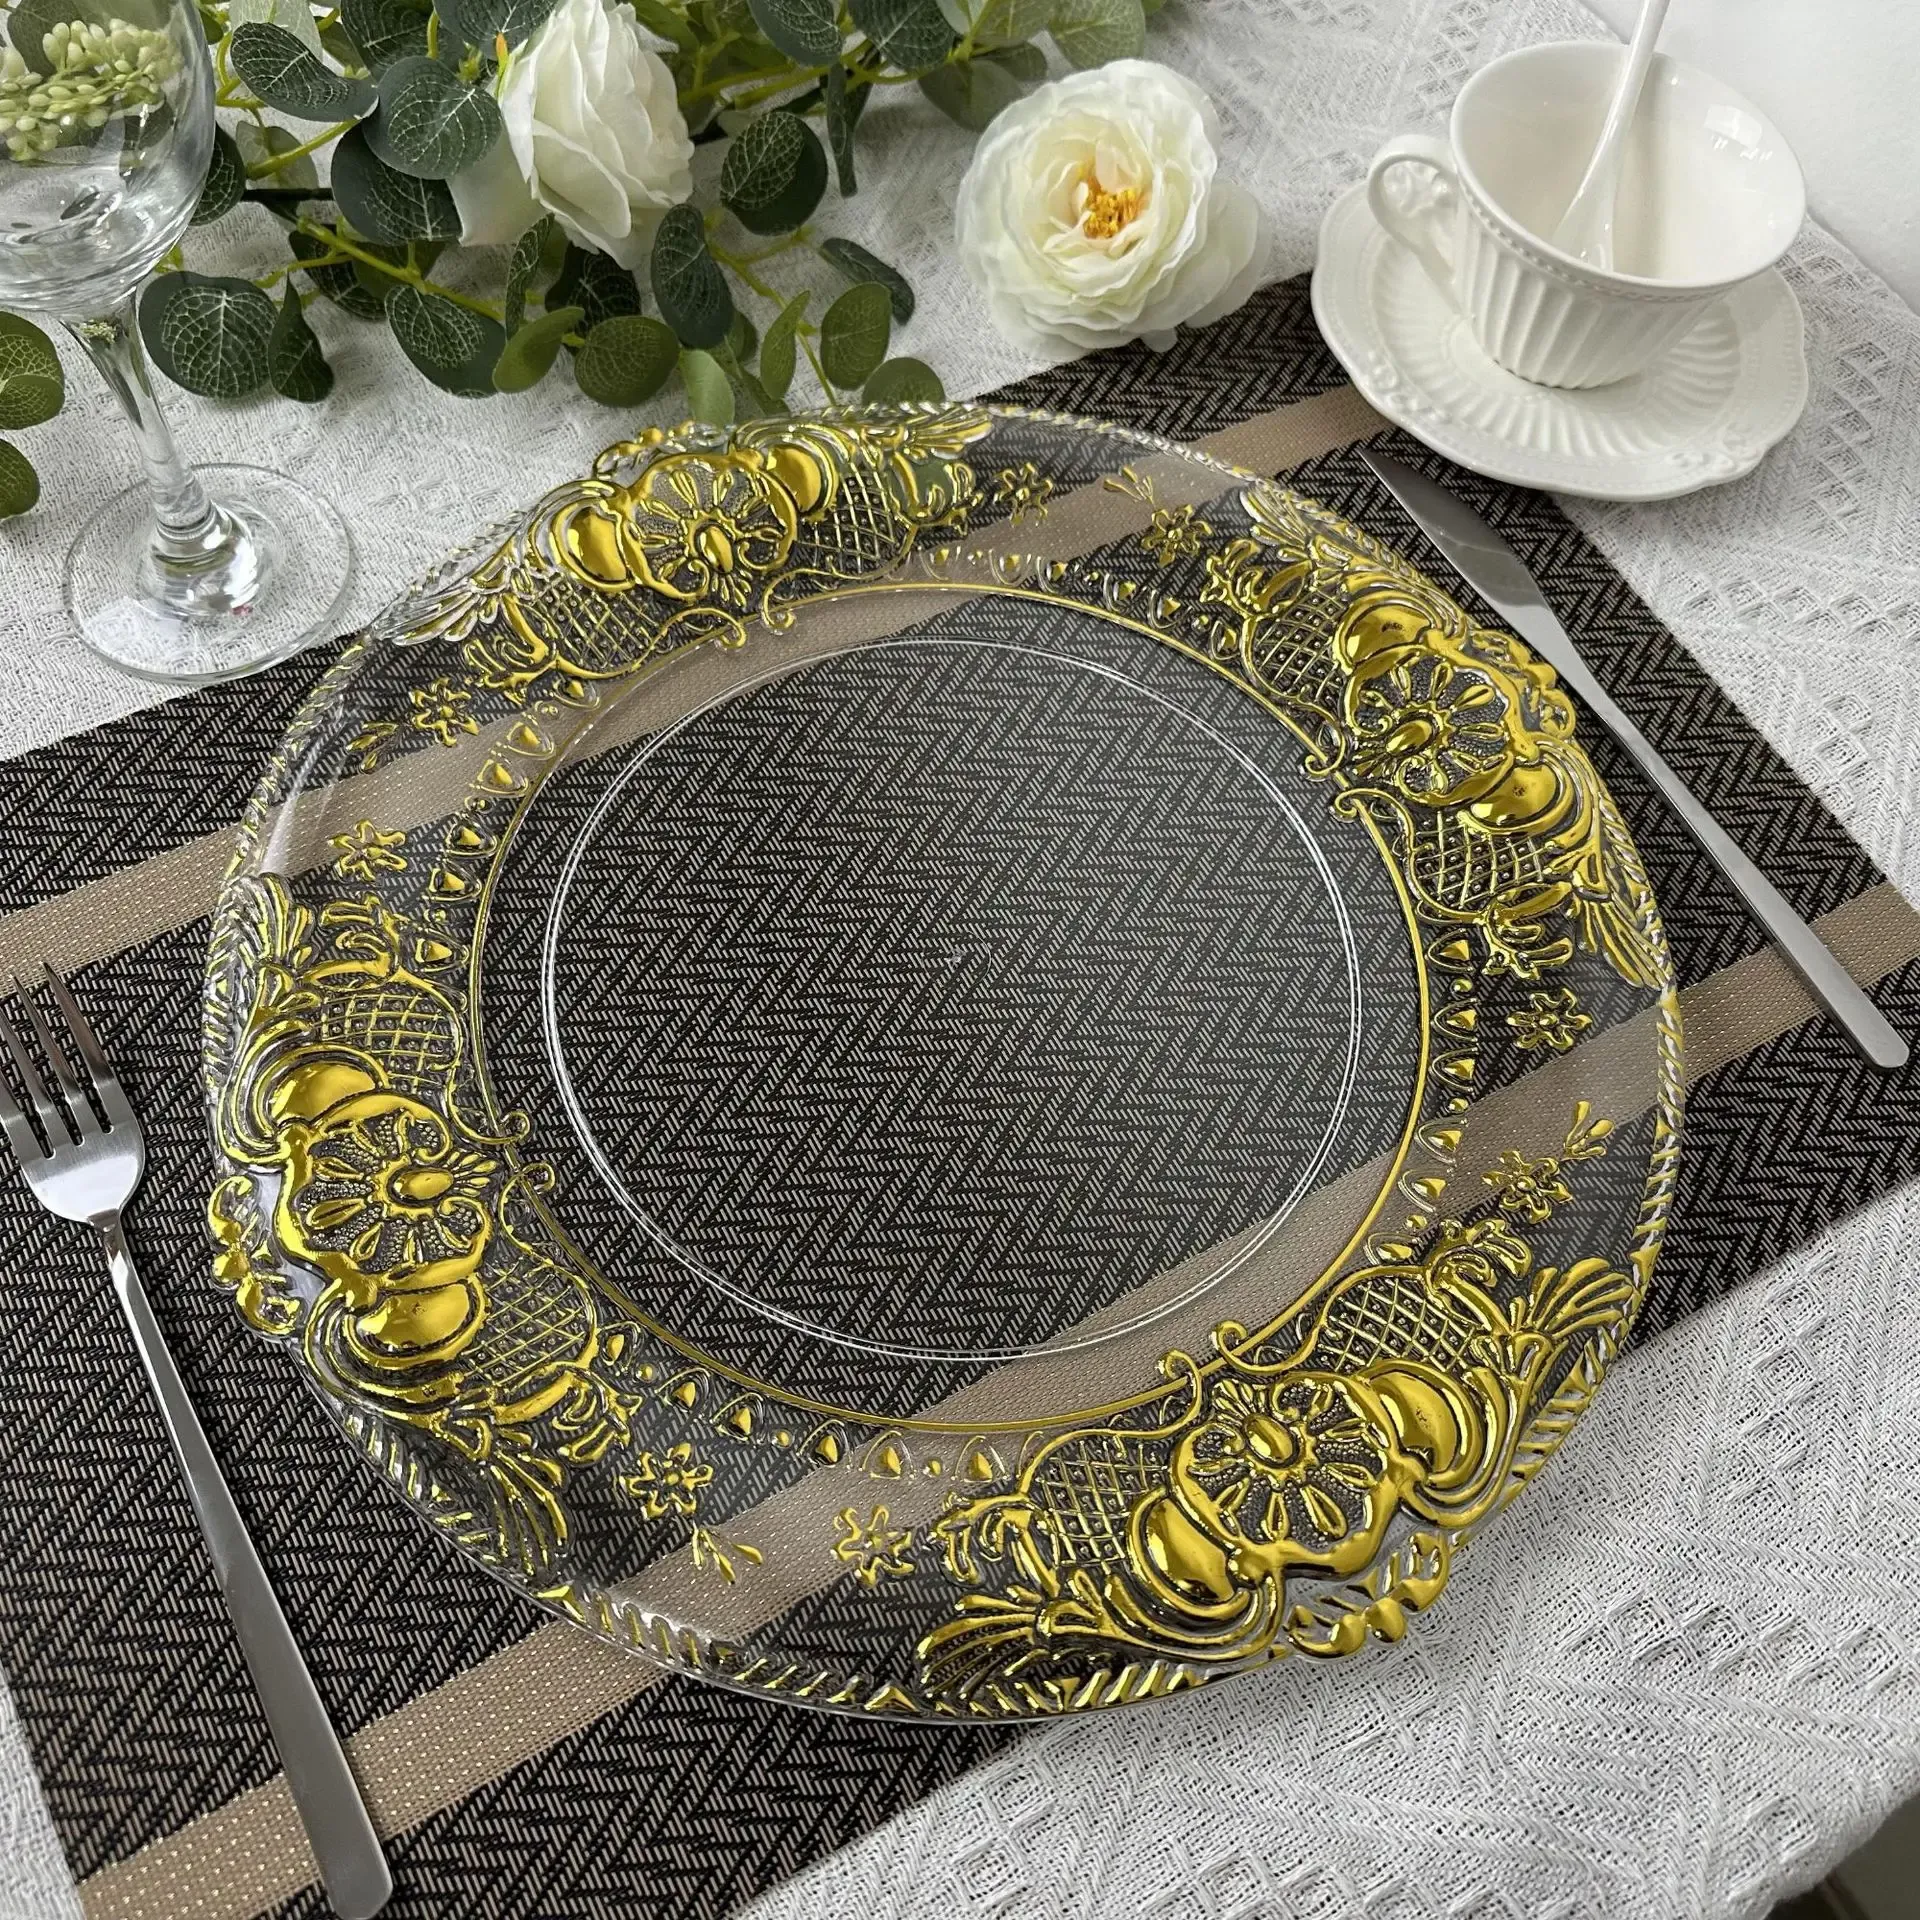 50 stuks opladerplaten doorzichtig plastic dienblad ronde gerechten met gouden patronen in Europese stijl acryl decoratieve eetplaat voor tafelschikking